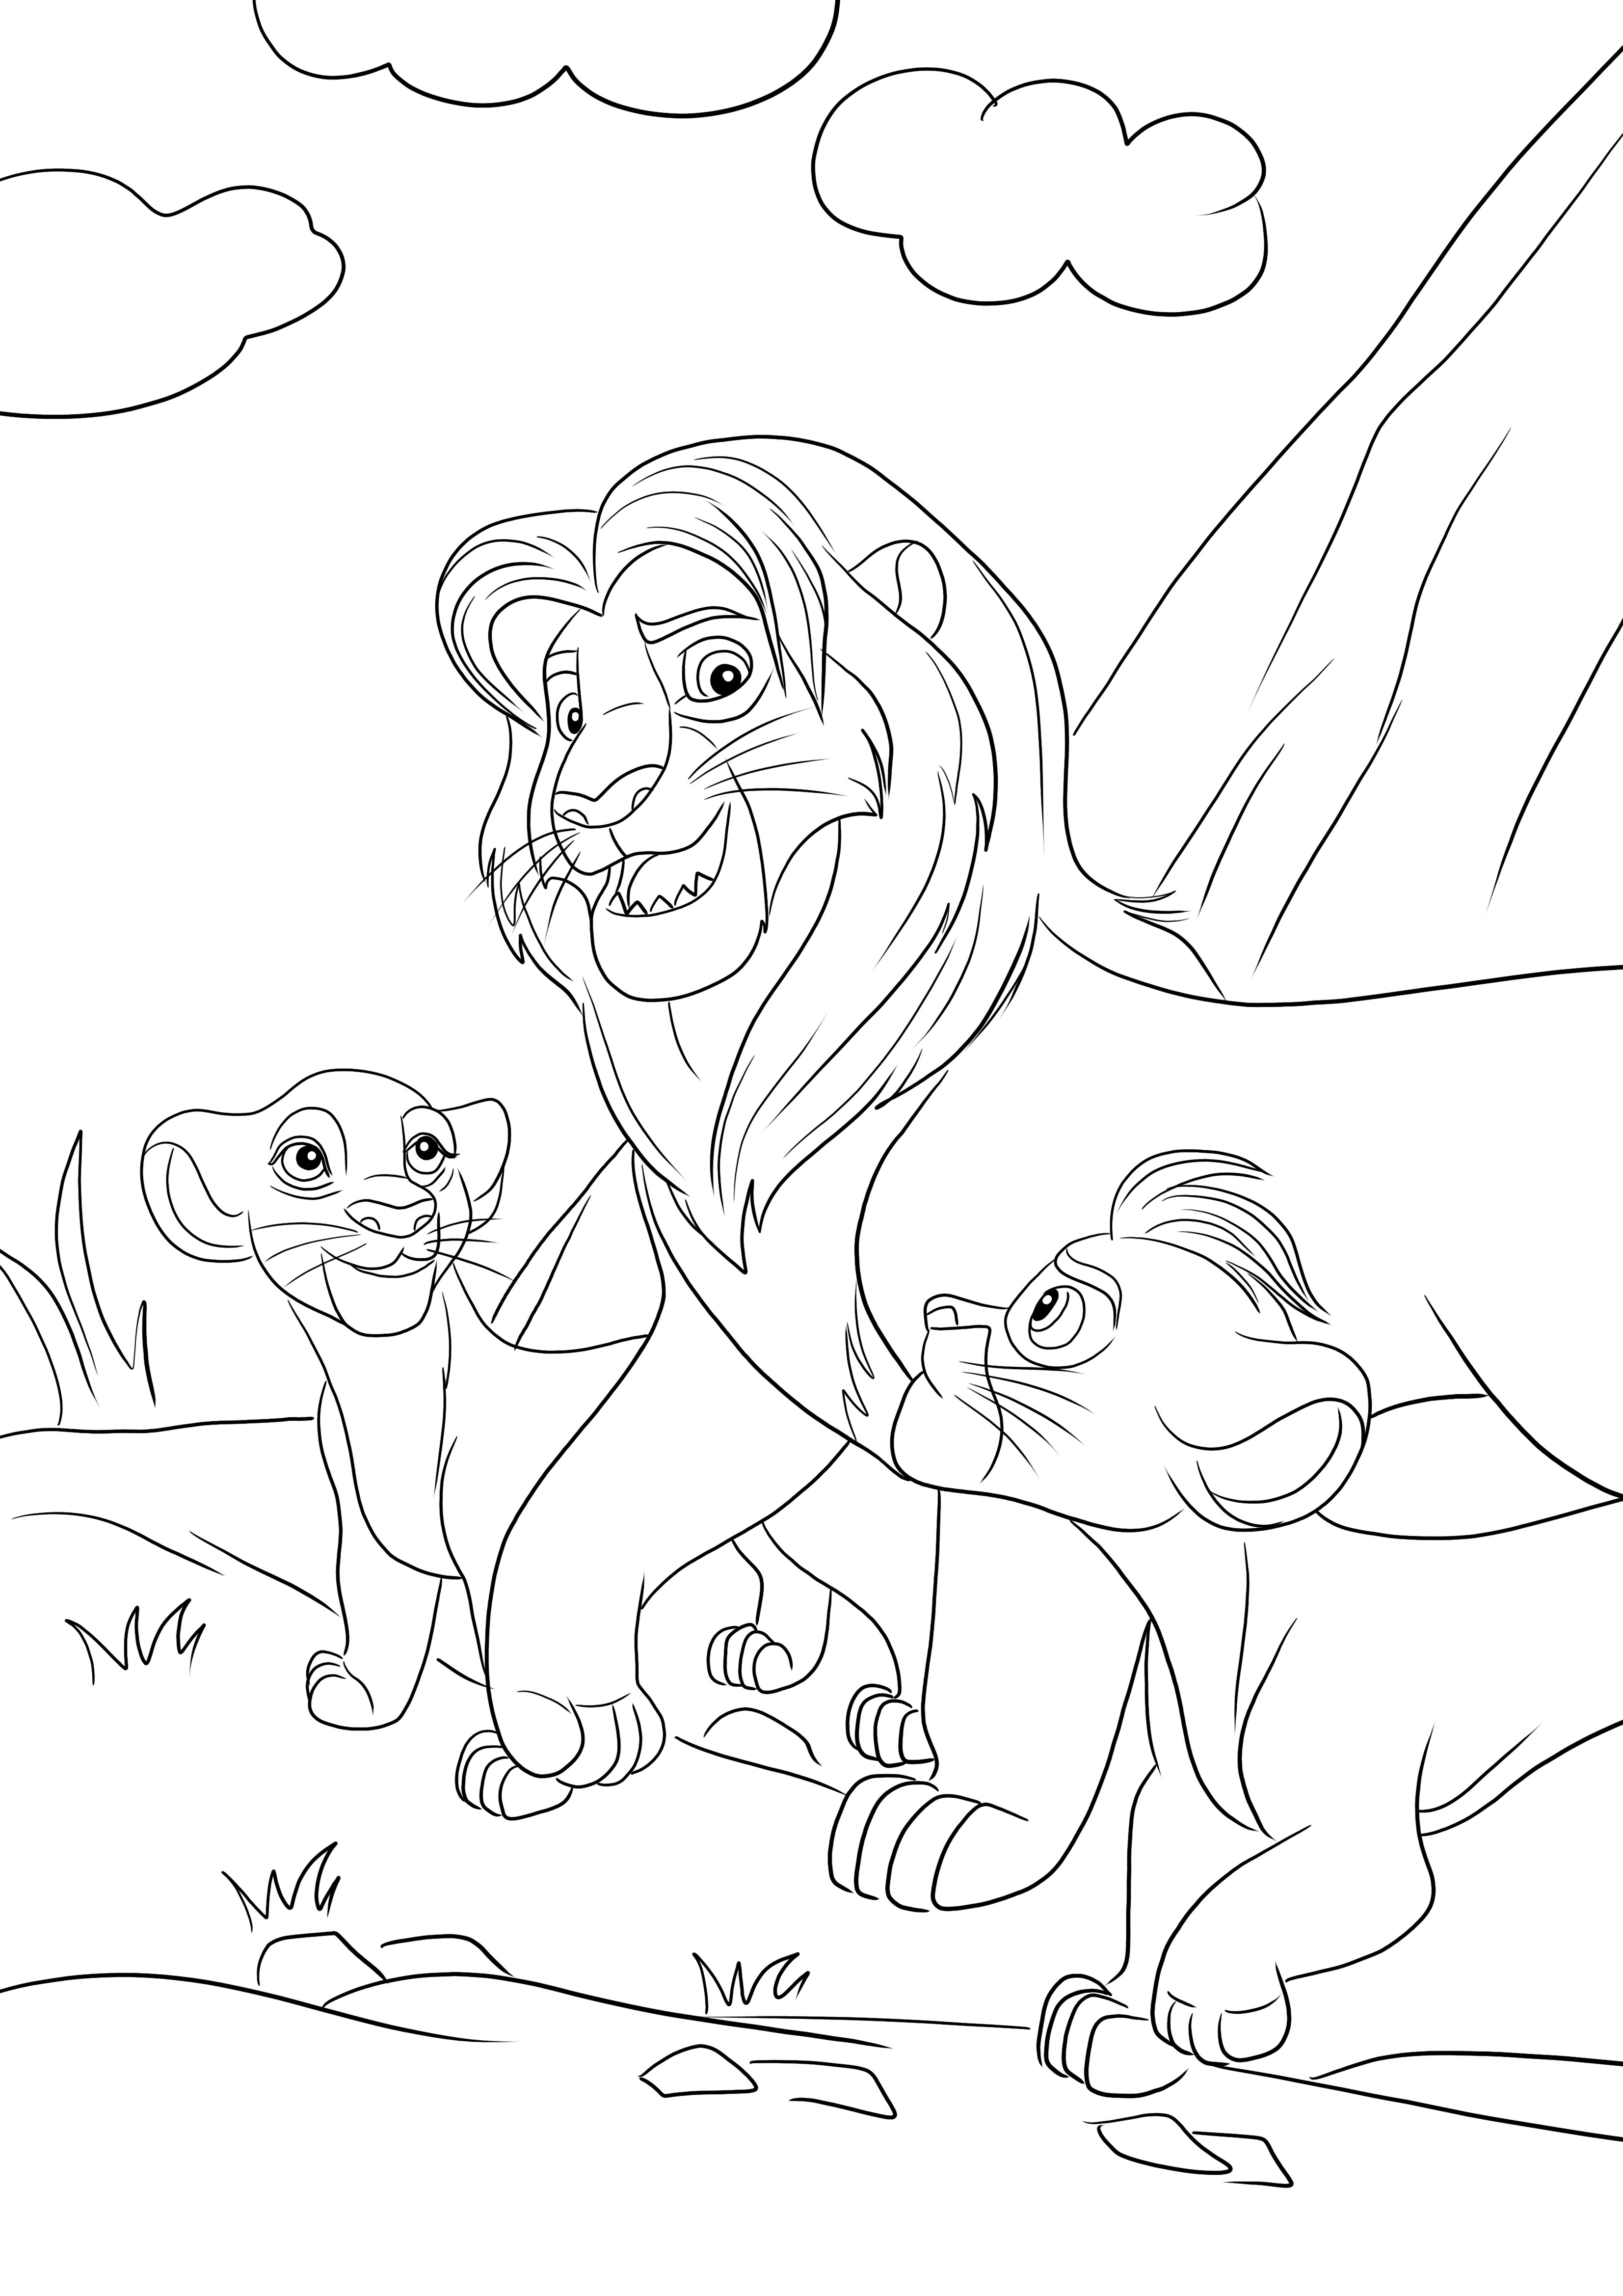 Colorear gratis de Simba y sus dos hijos-Kiara y Kion para descargar y colorear